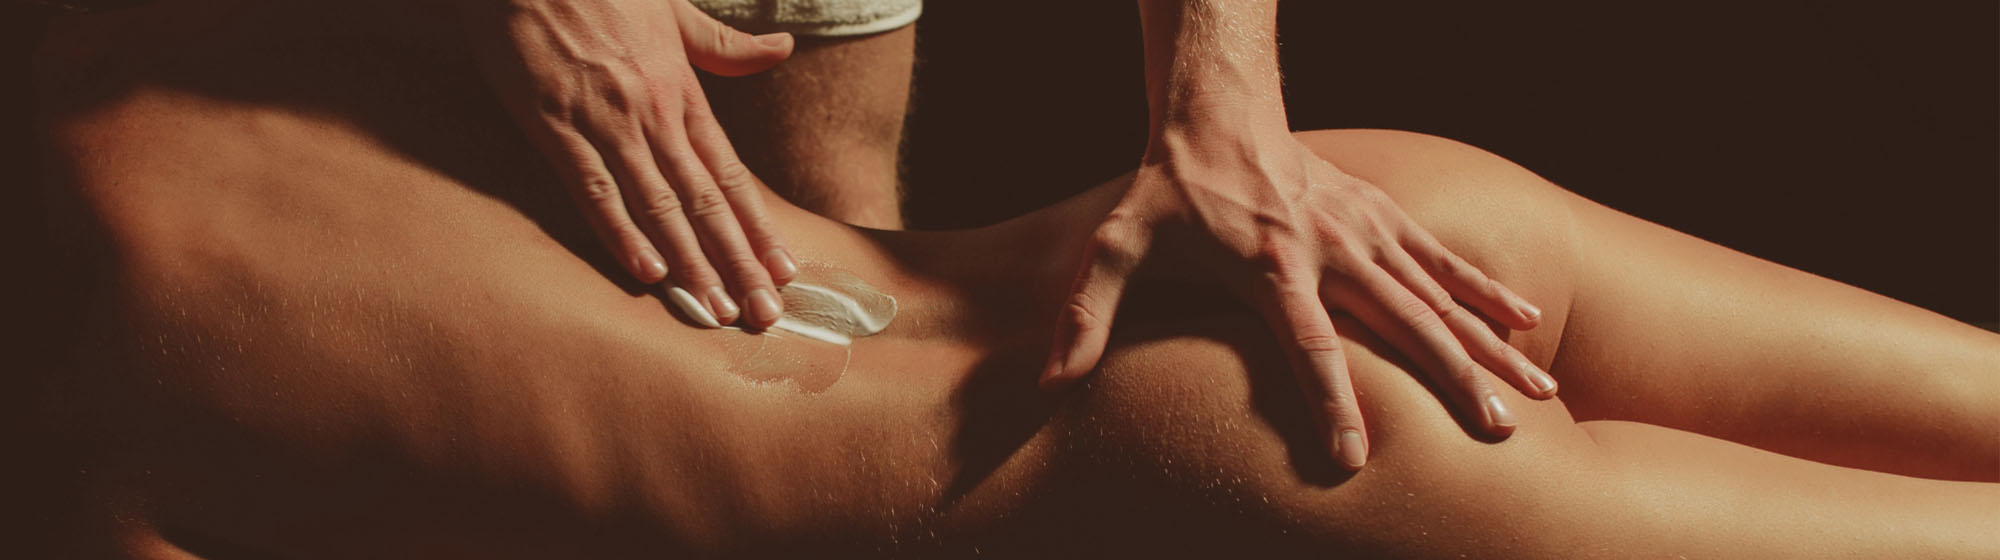 Урок эротического массажа с анальной стимуляцией